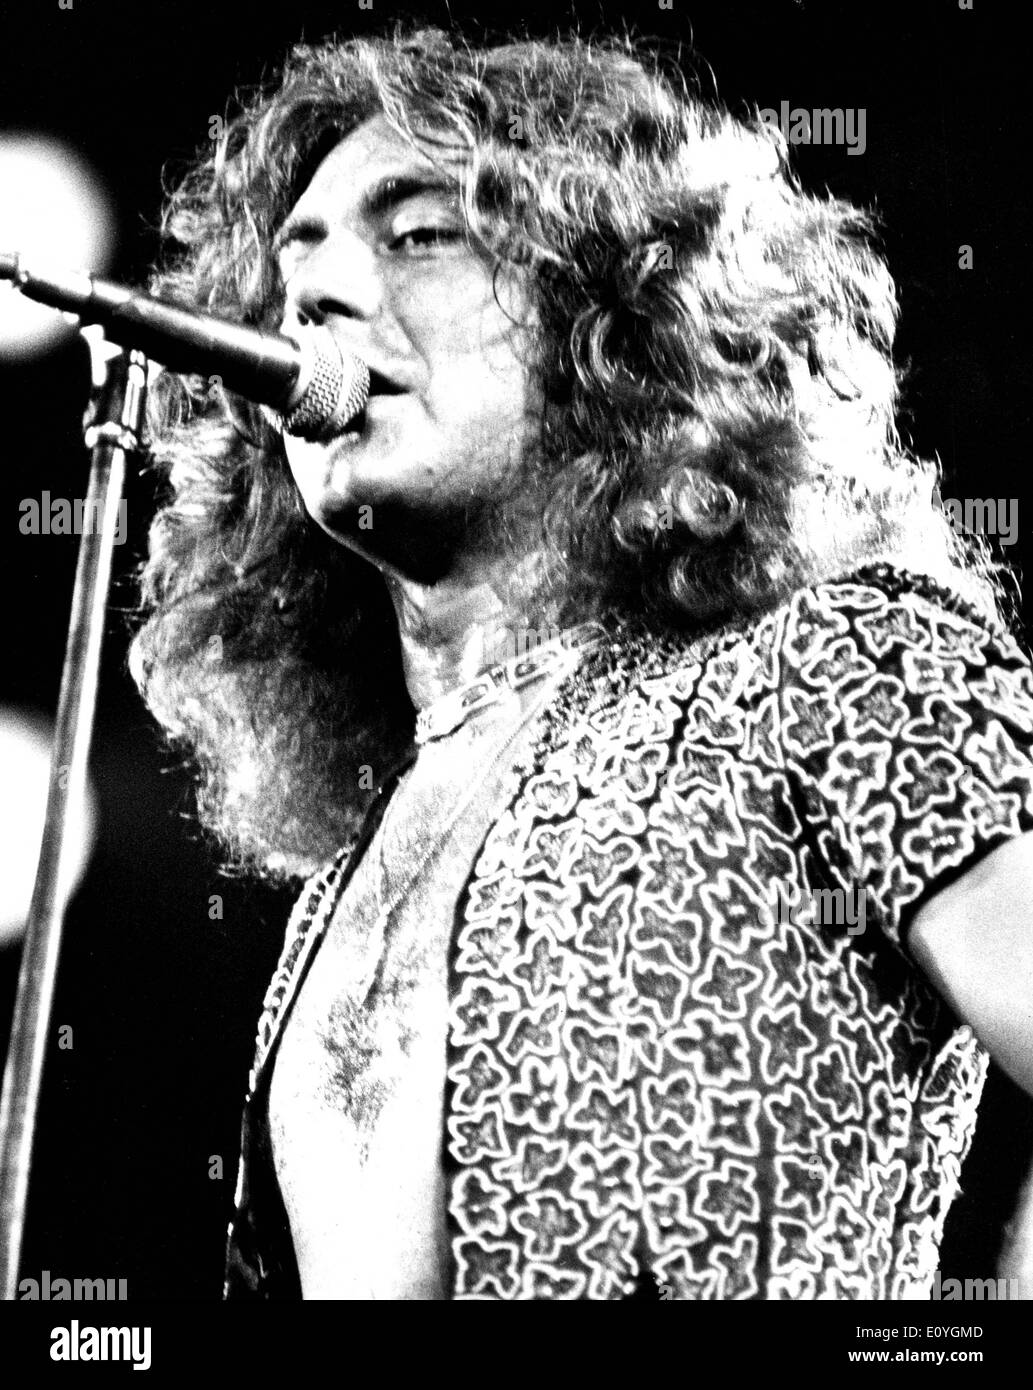 Led Zeppelin singer Robert Plant in concert Stock Photo